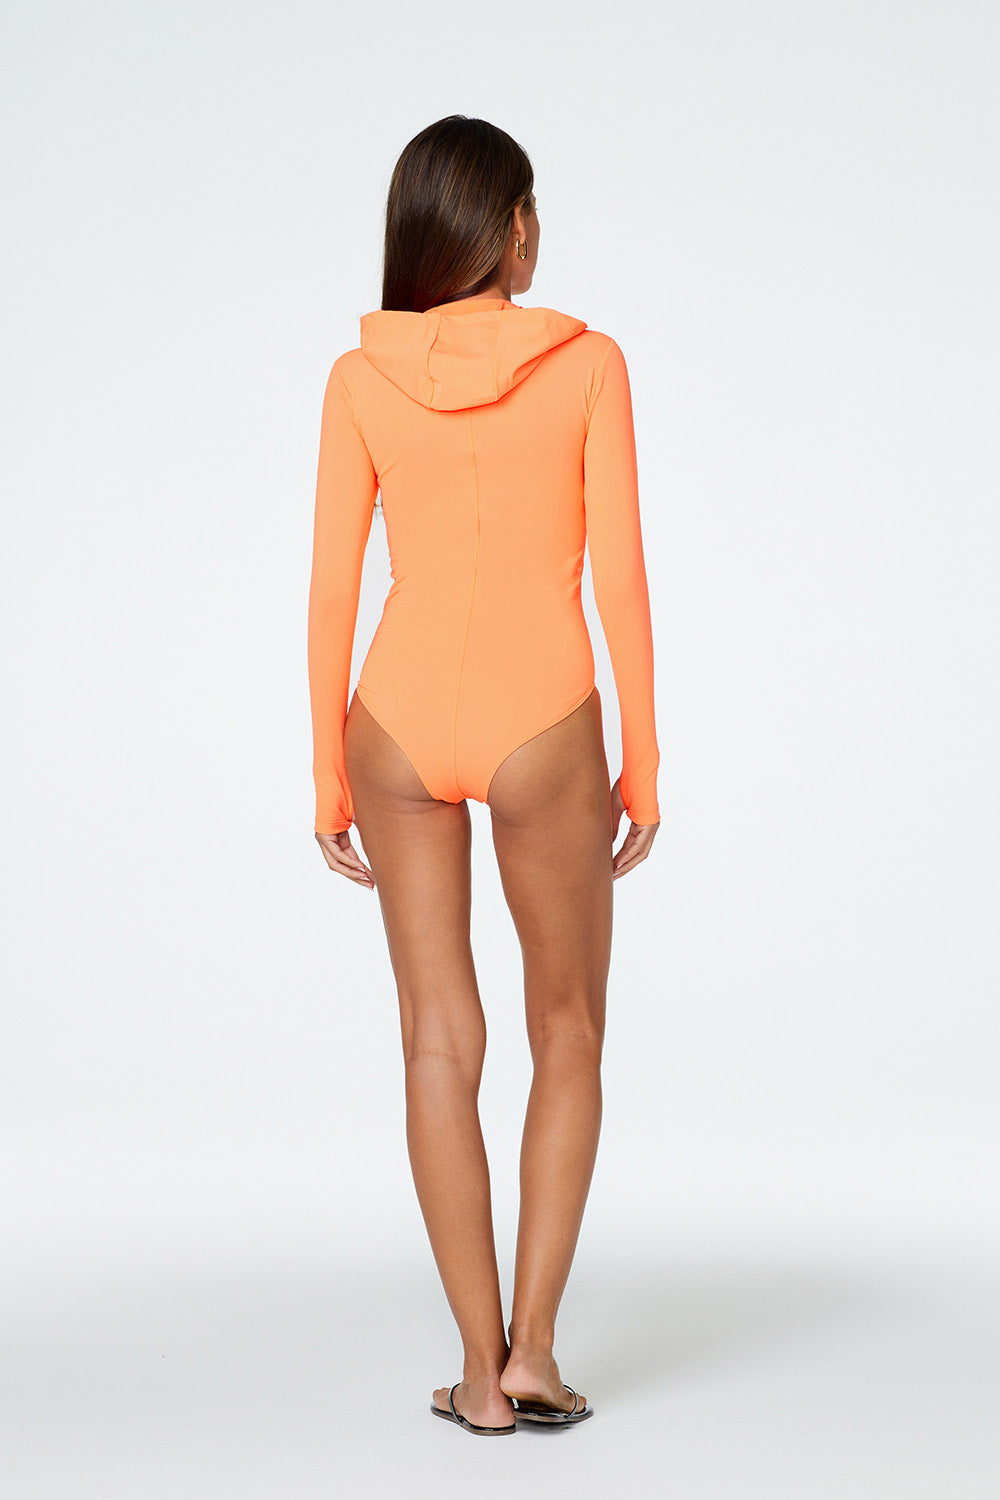 Lola Bodysuit in Neon Orange